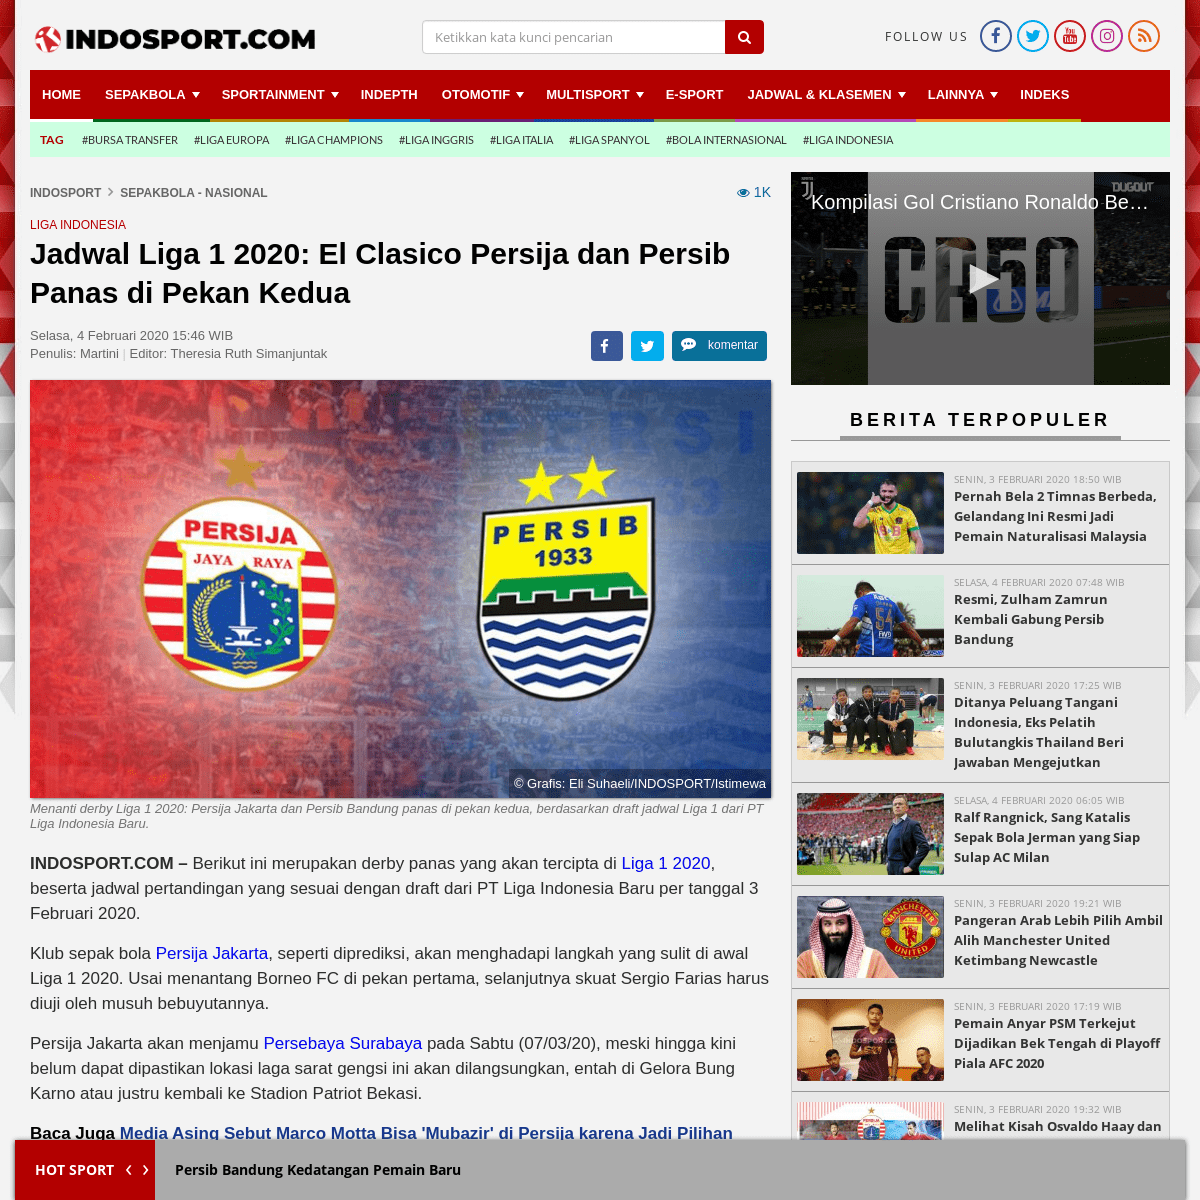 A complete backup of www.indosport.com/sepakbola/20200204/jadwal-liga-1-2020-el-clasico-persija-dan-persib-panas-di-pekan-kedua